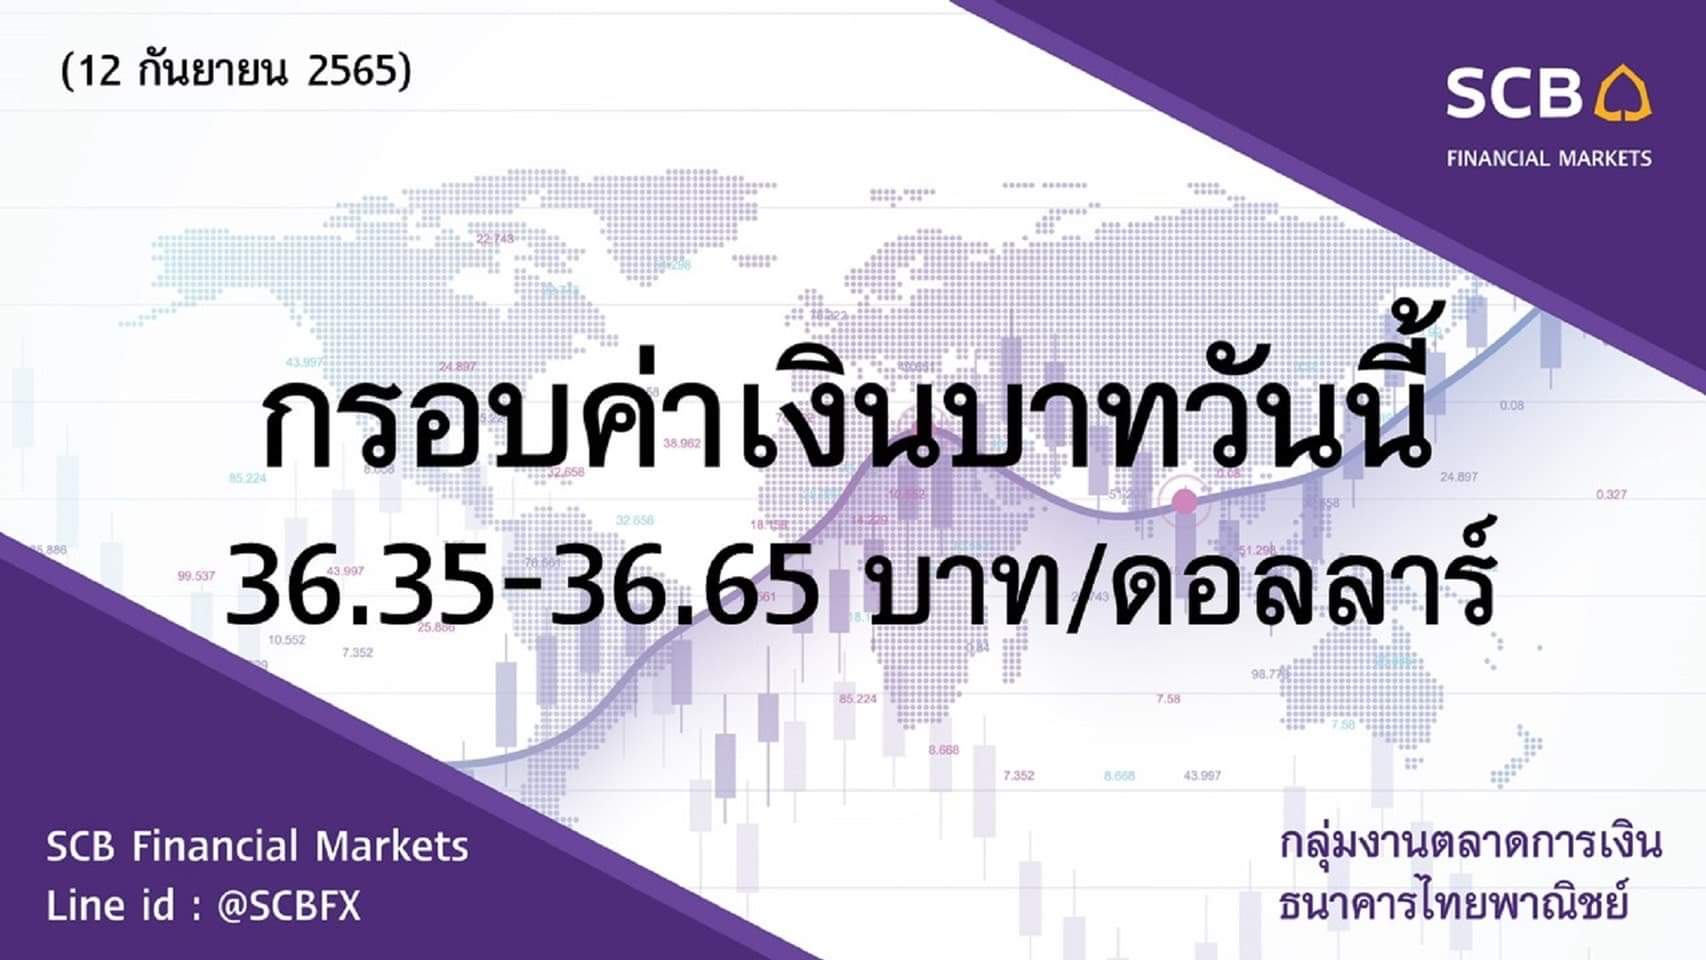 กลุ่มงานตลาดการเงิน ธนาคารไทยพาณิชย์ (SCB Financial Markets) ค่าเงินบาทประจำวันที่ 12 กันยายน 2565